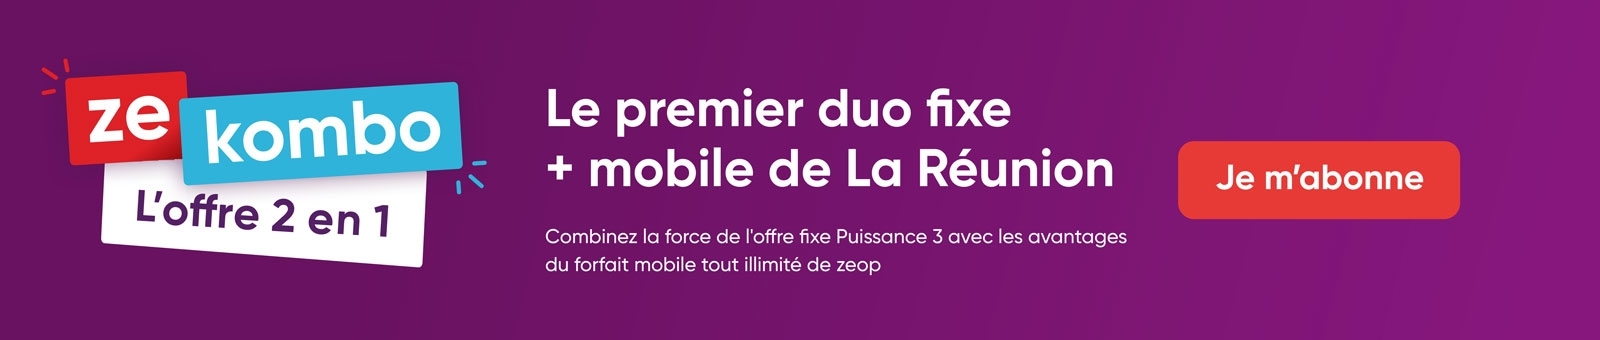 Le premier duo fixe + mobile de La Runion